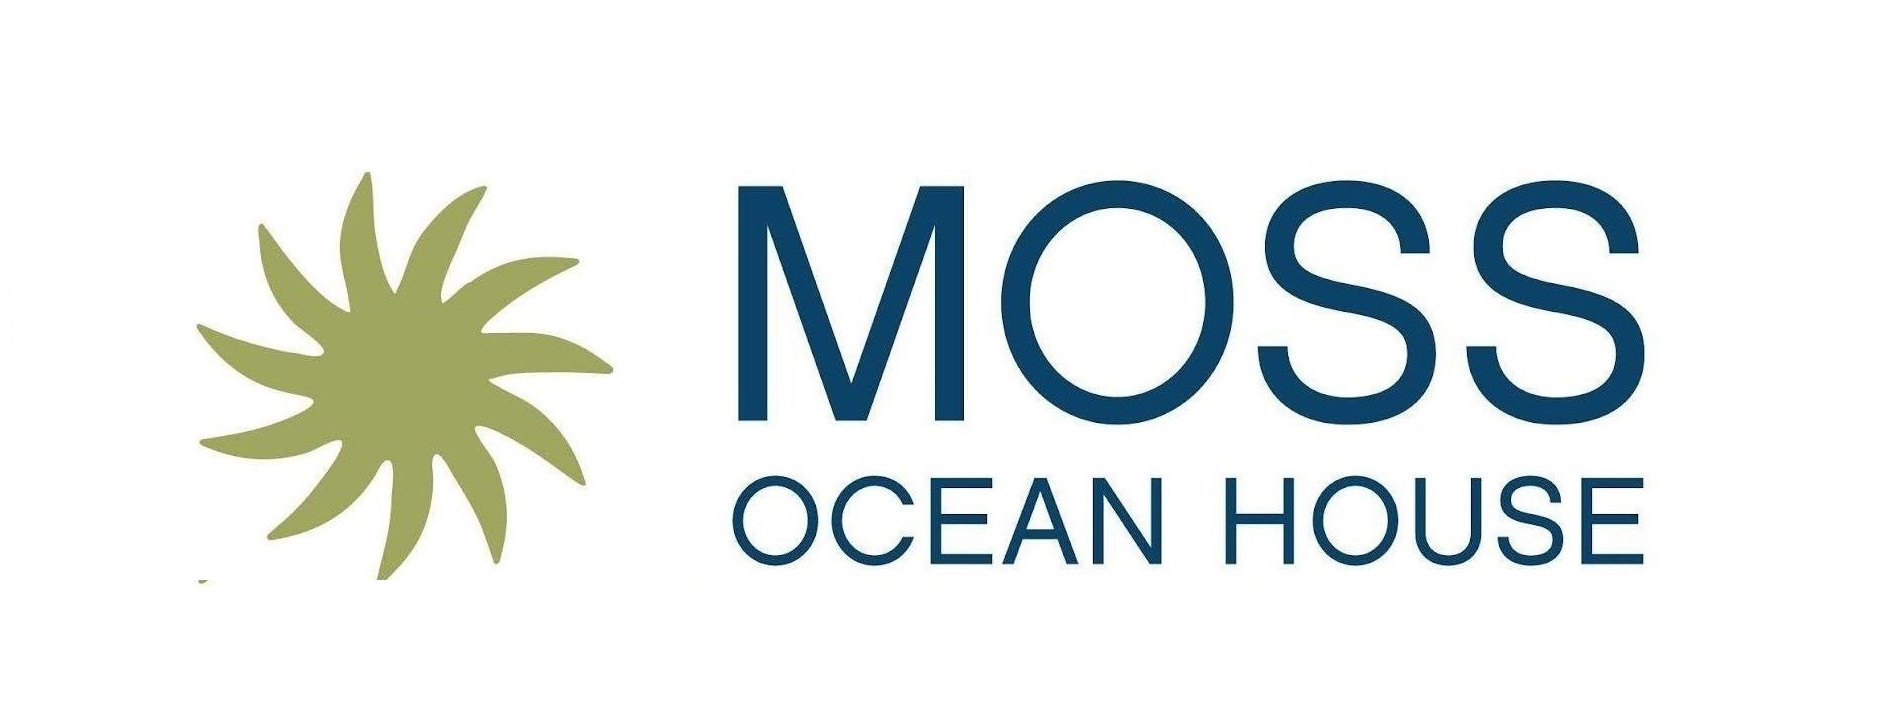 moss ocean house